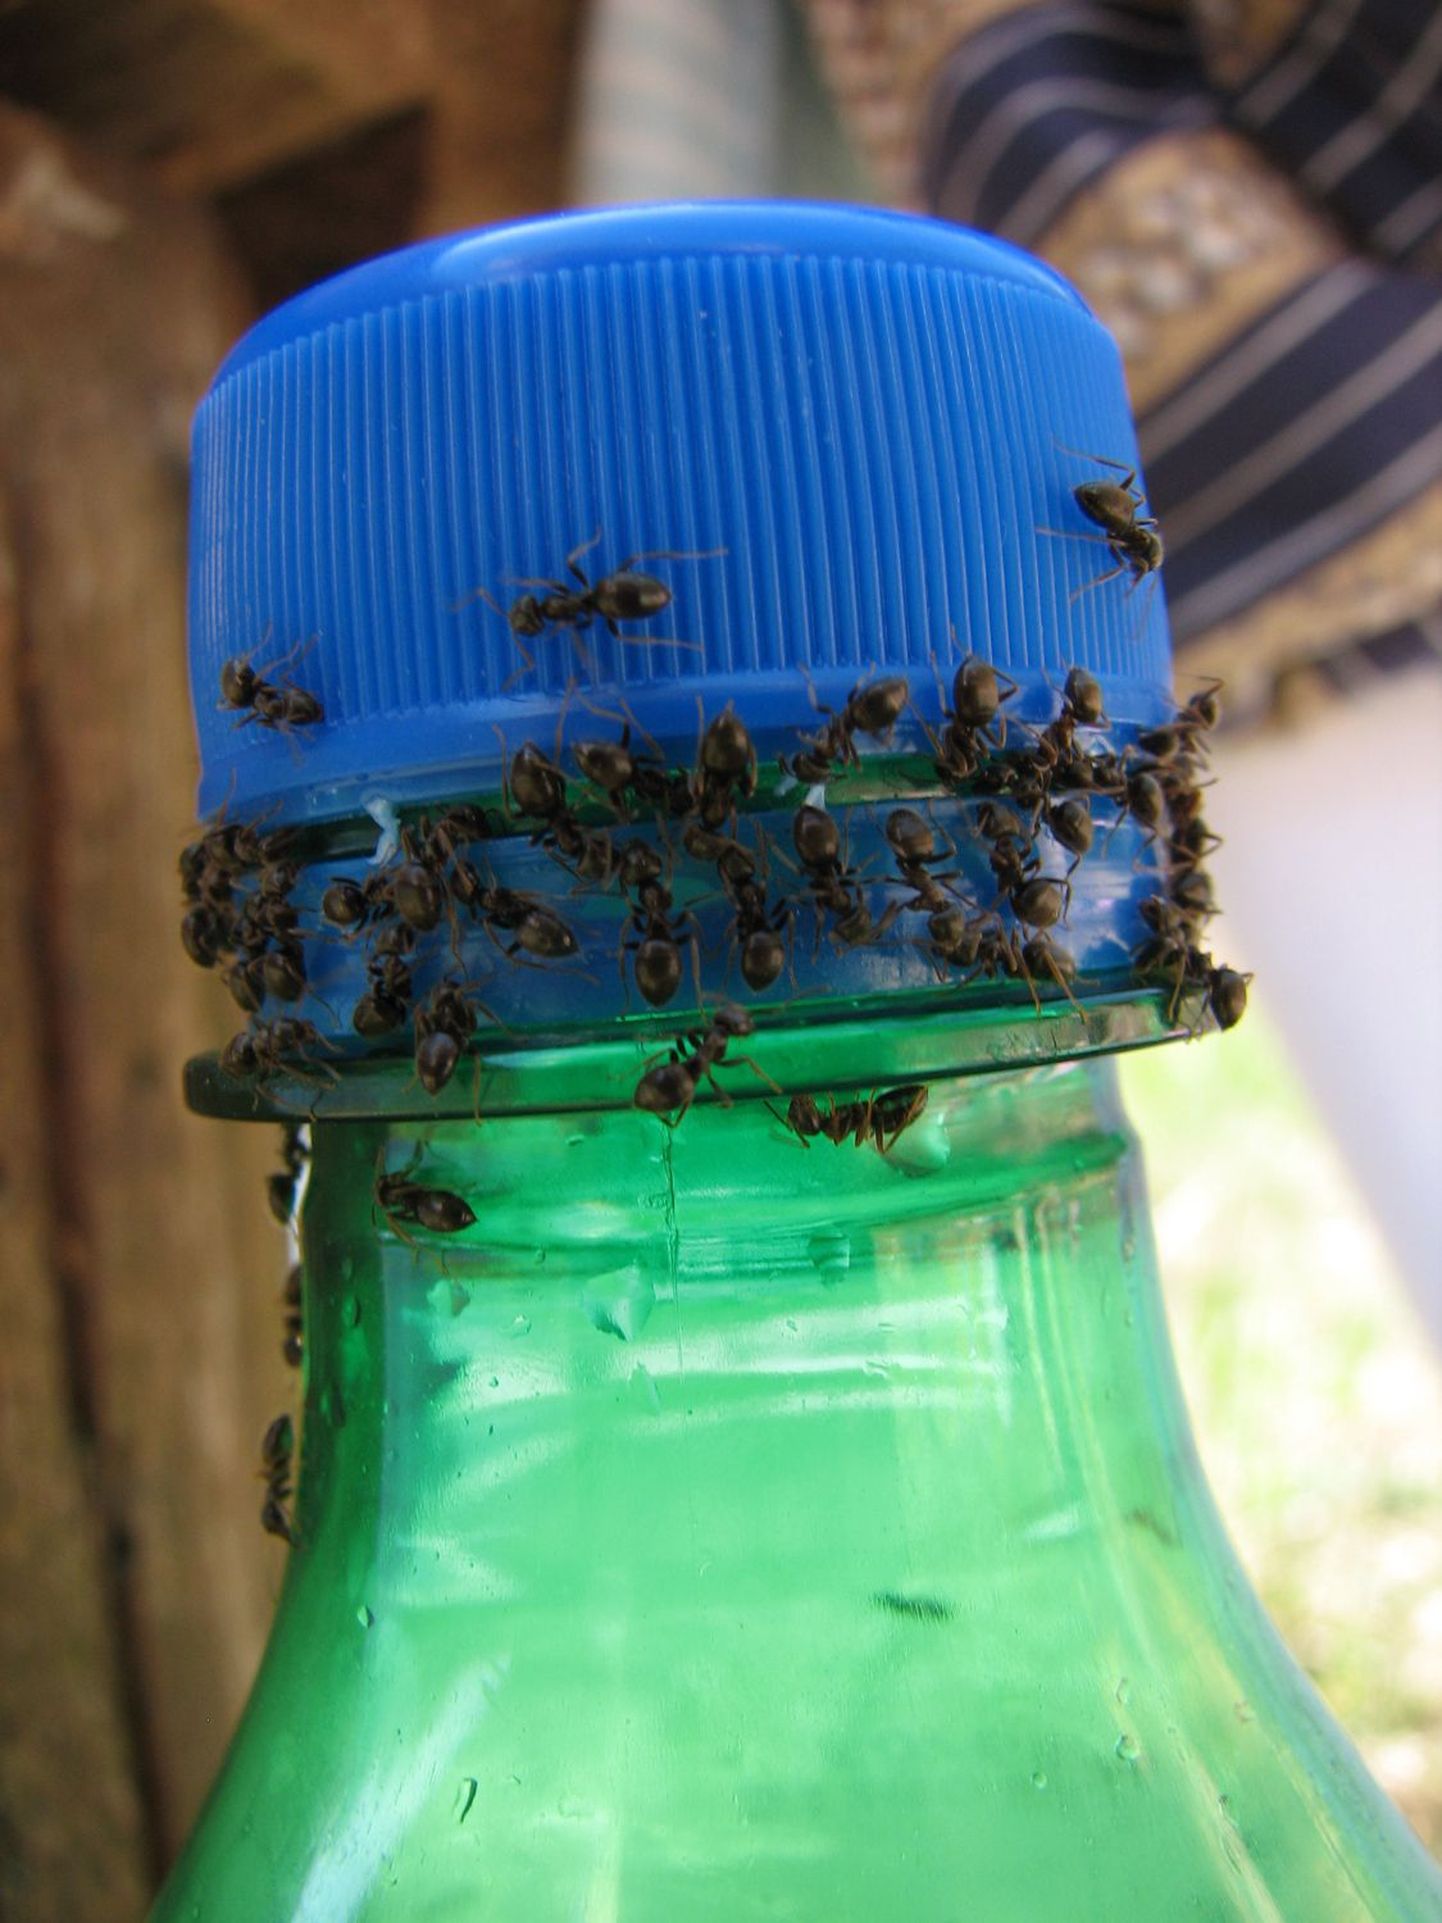 Sipelgaid meelitavad ligi ka magusad joogid. Sestap tasub hoolitseda selle eest, et joogipudel kindlalt suletud saaks.